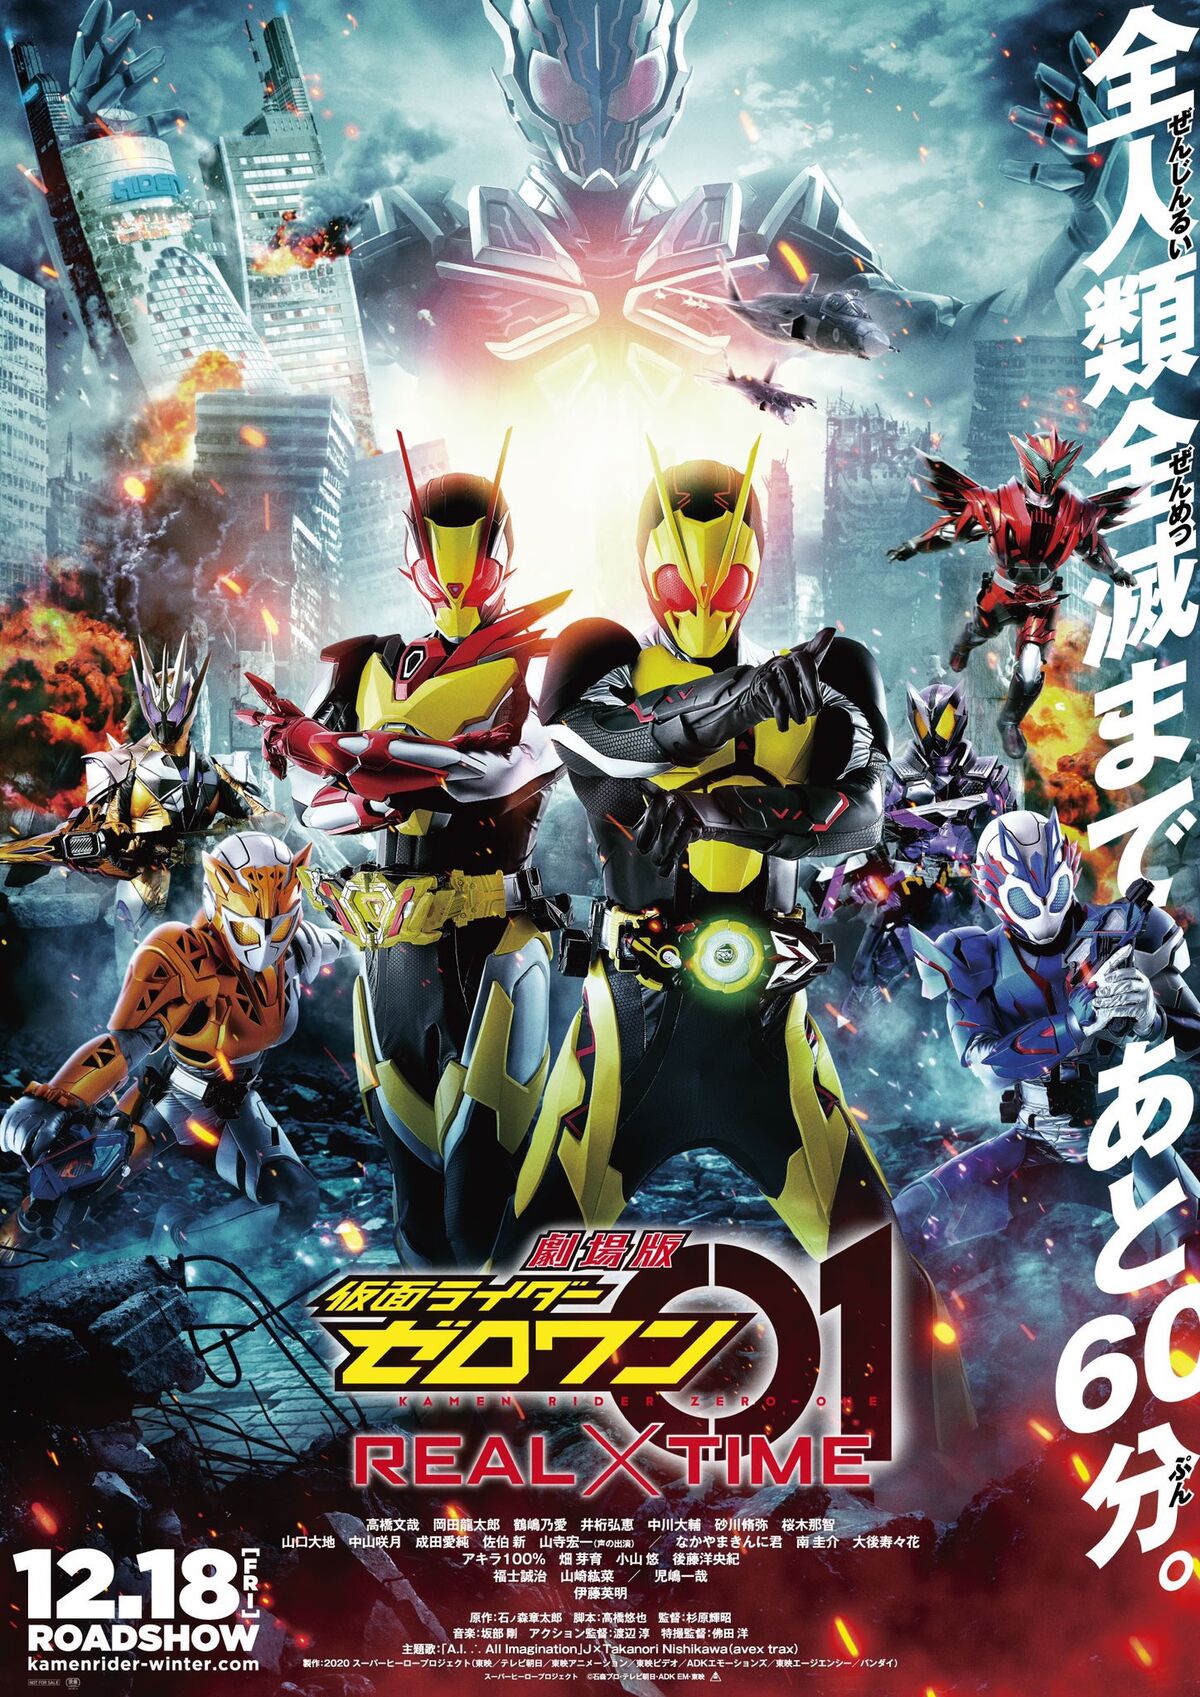 Kamen Rider Zero-One: The Complete Series + Movie